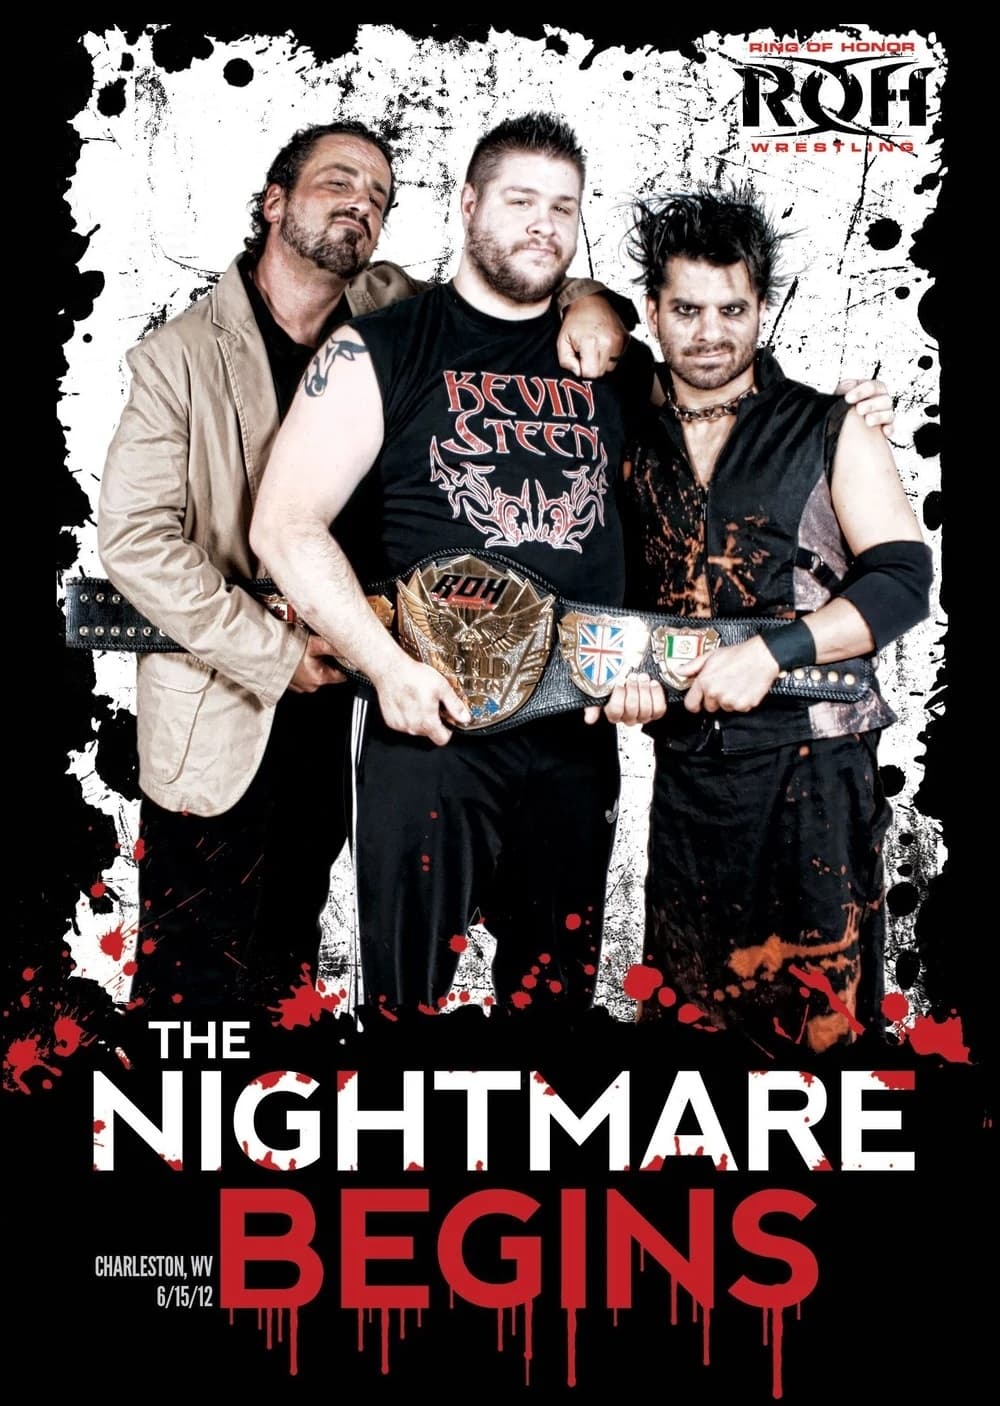 ROH: The Nightmare Begins